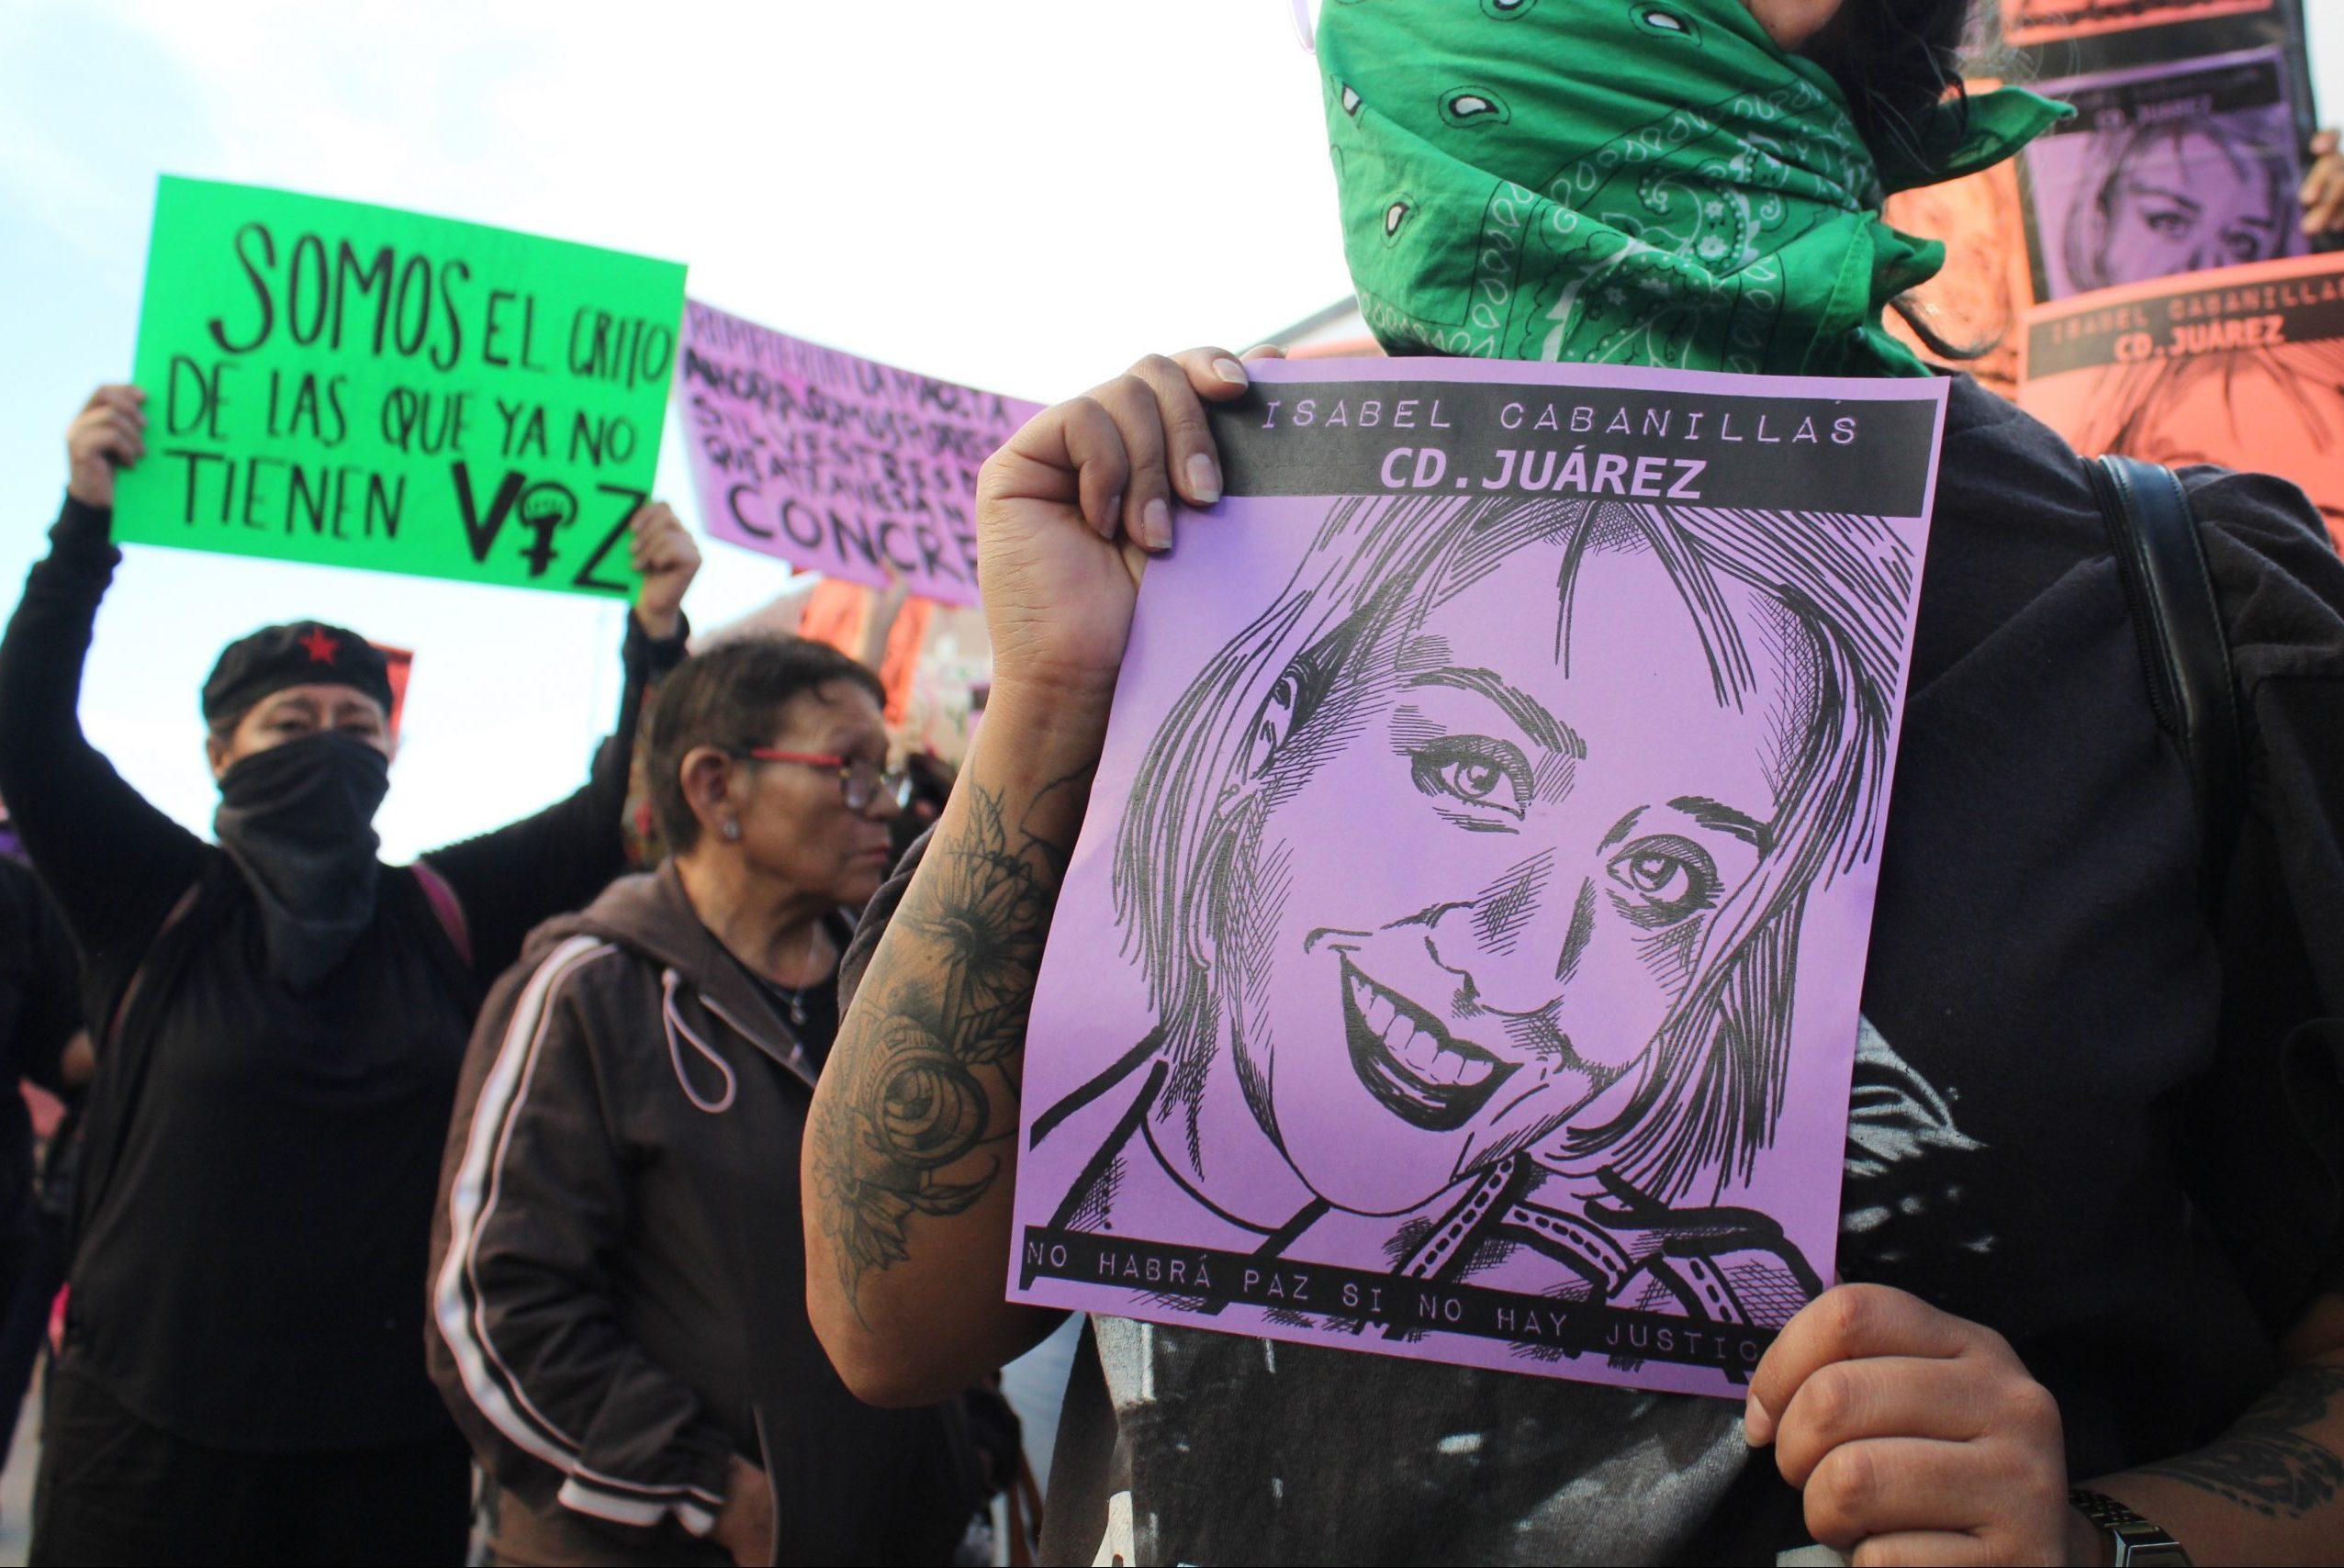 A seis meses del asesinato de la activista Isabel Cabanillas, aún no se reportan avances en la investigación